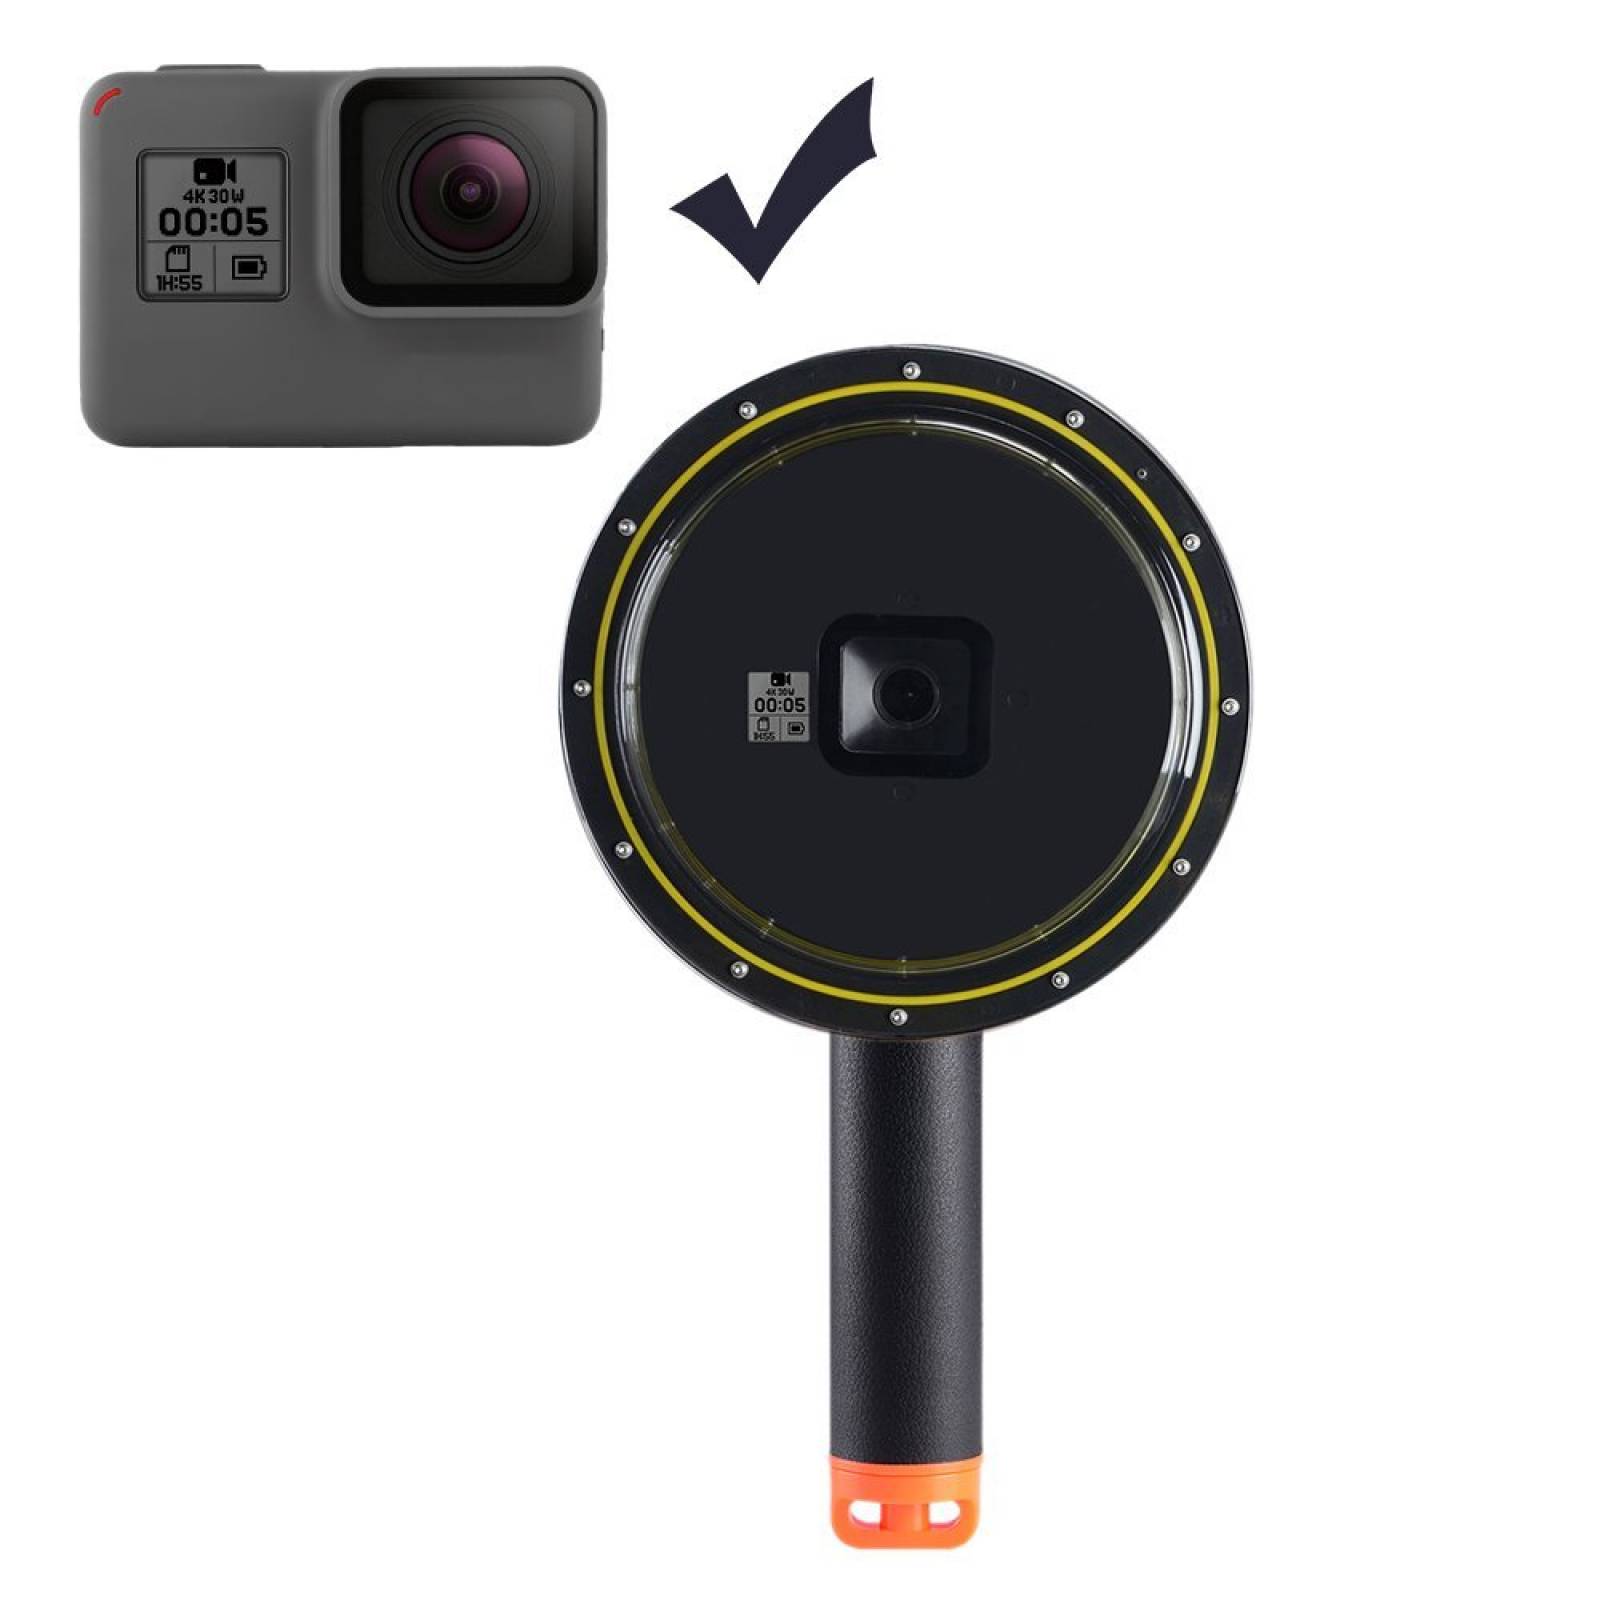 B:Puerto Suptig domo lente GoPro Hero 5 caja resistente al agu